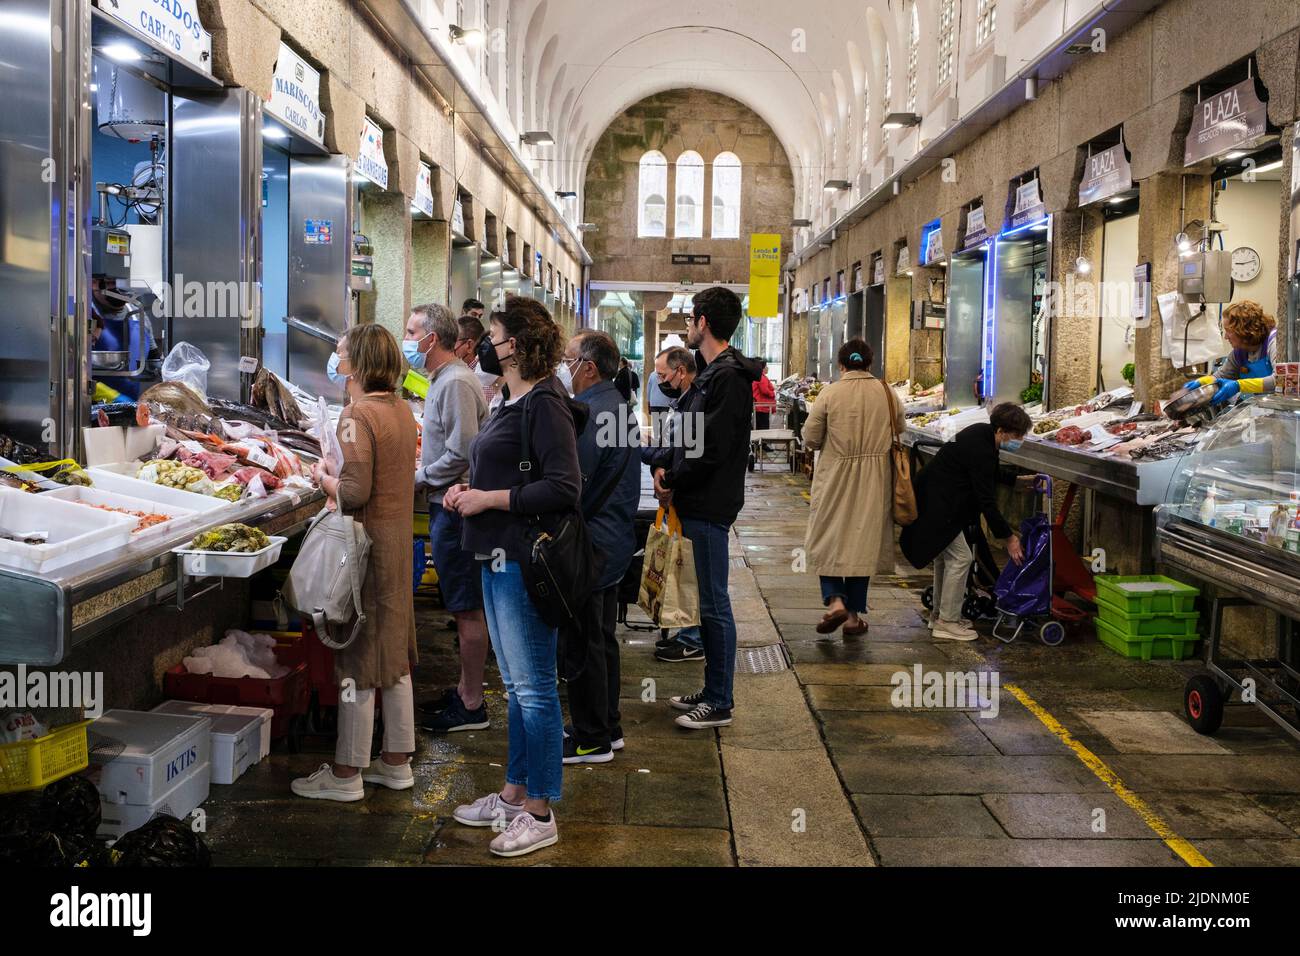 Espagne, Saint-Jacques-de-Compostelle, Galice. Clients sur le marché d'un fournisseur de produits de la mer. Banque D'Images